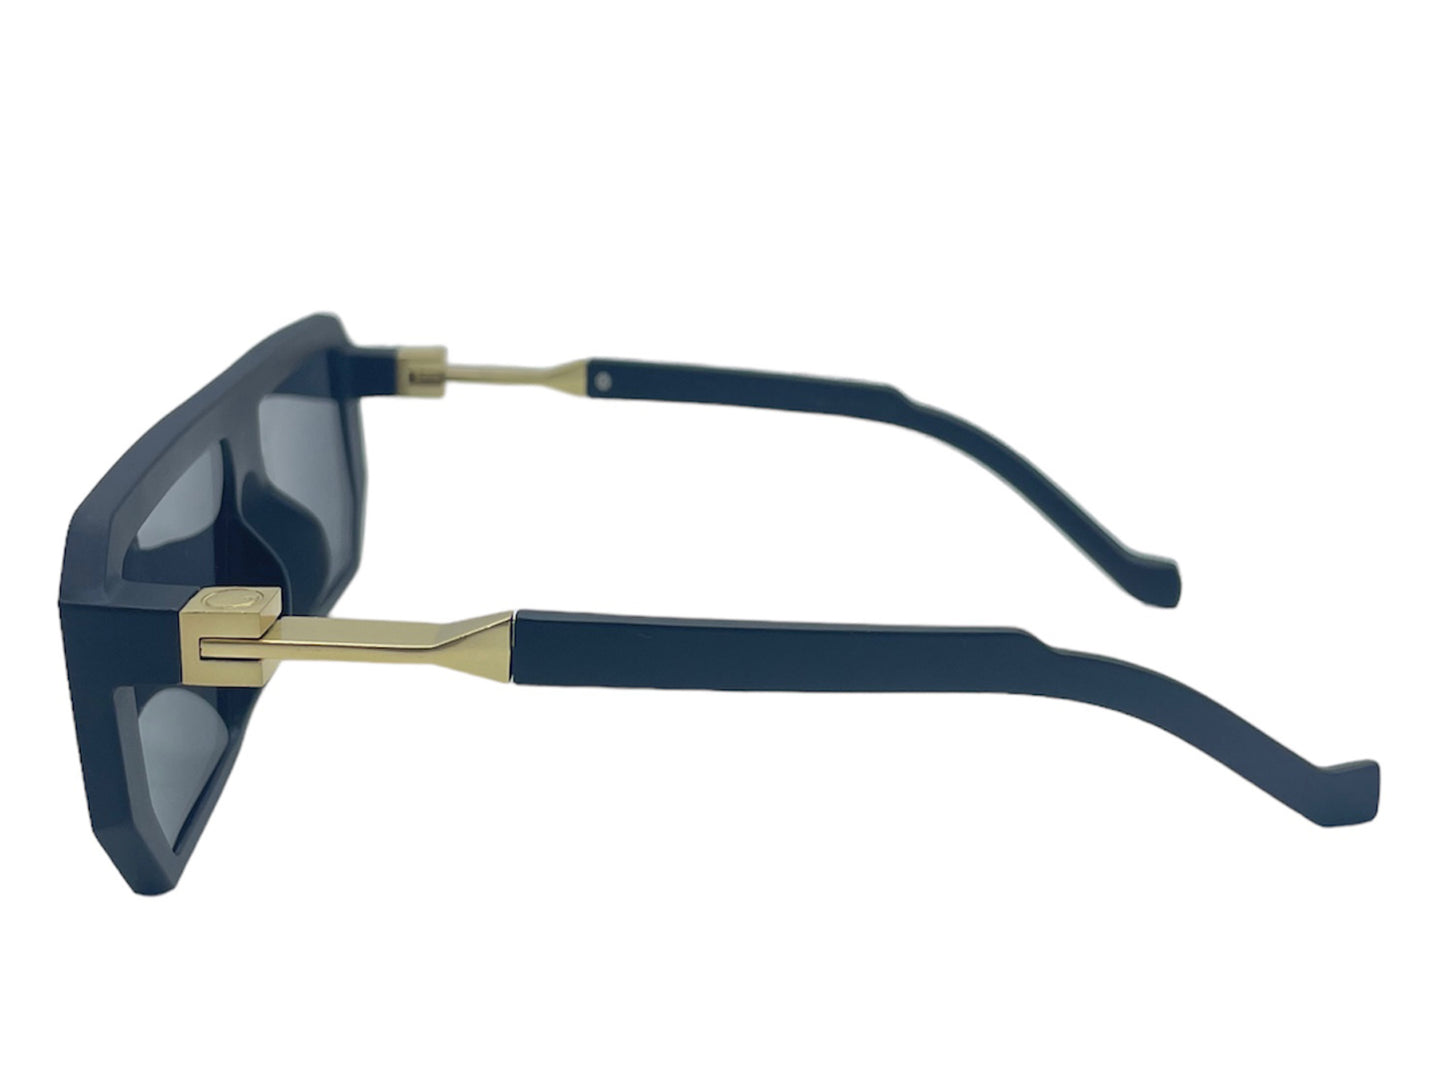 NS Classic - 007 - Black - Sunglasses